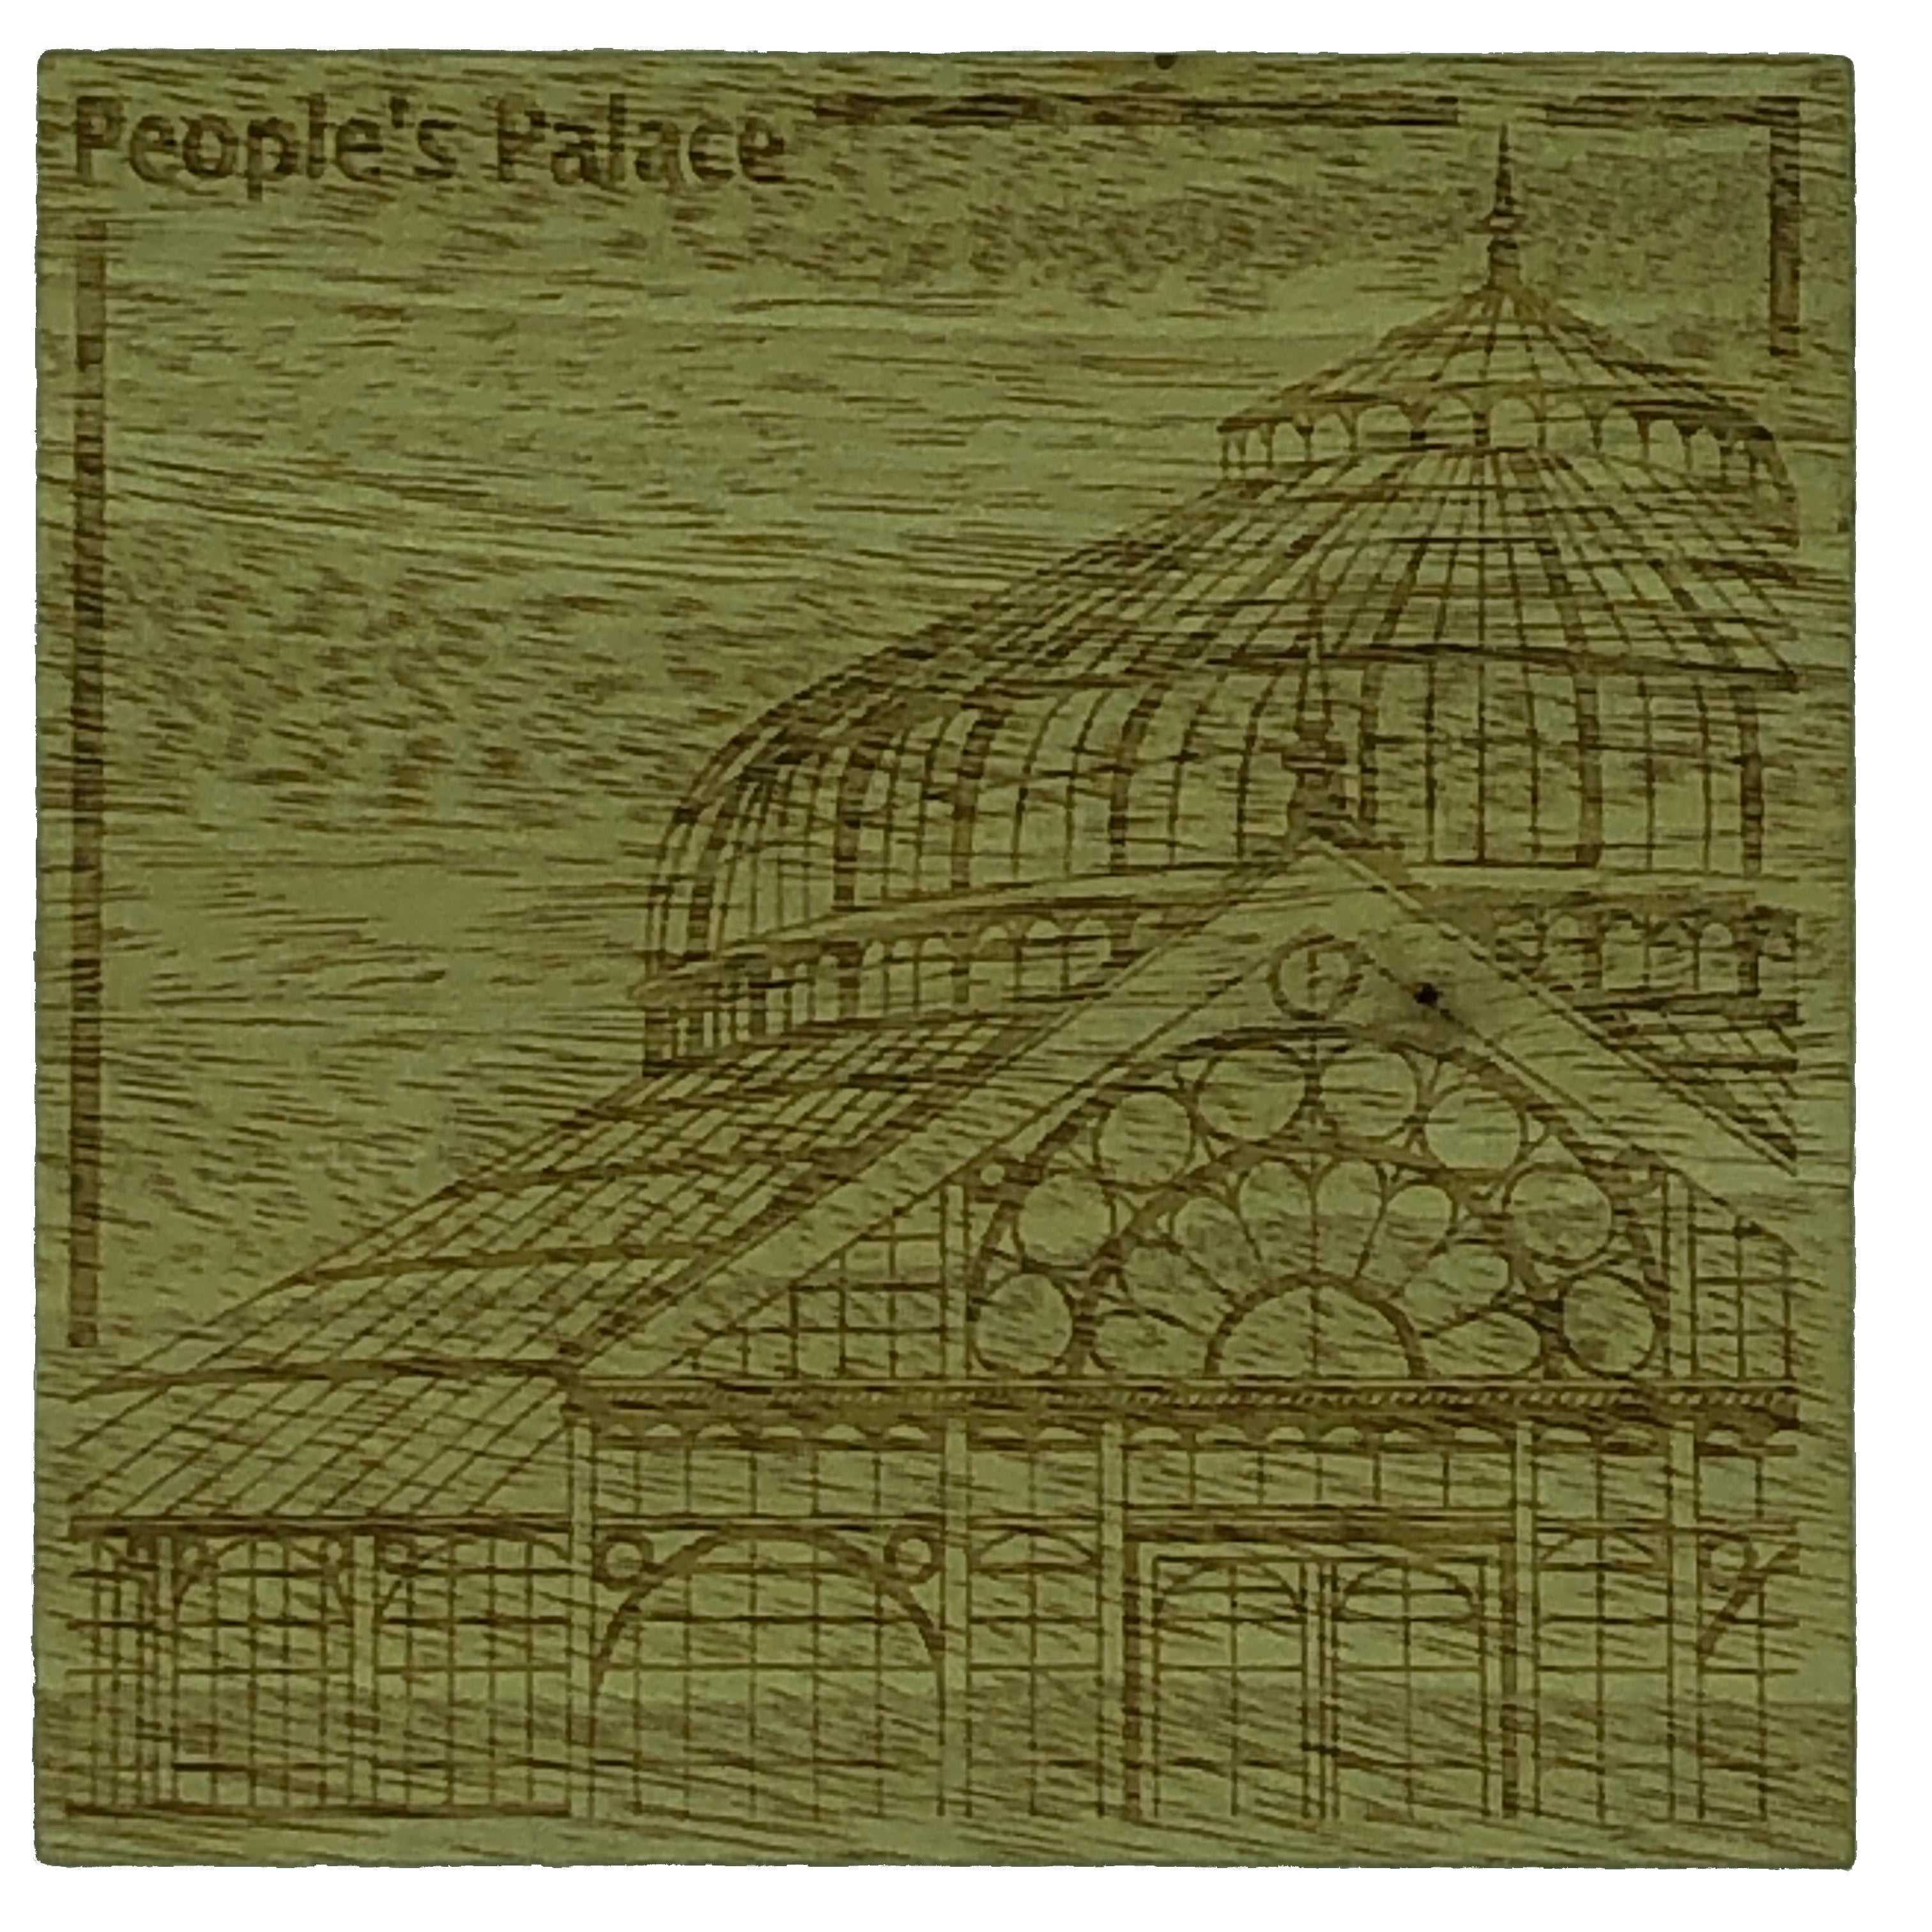 Glasgow landmark coasters - Peoples Palace glasshouse